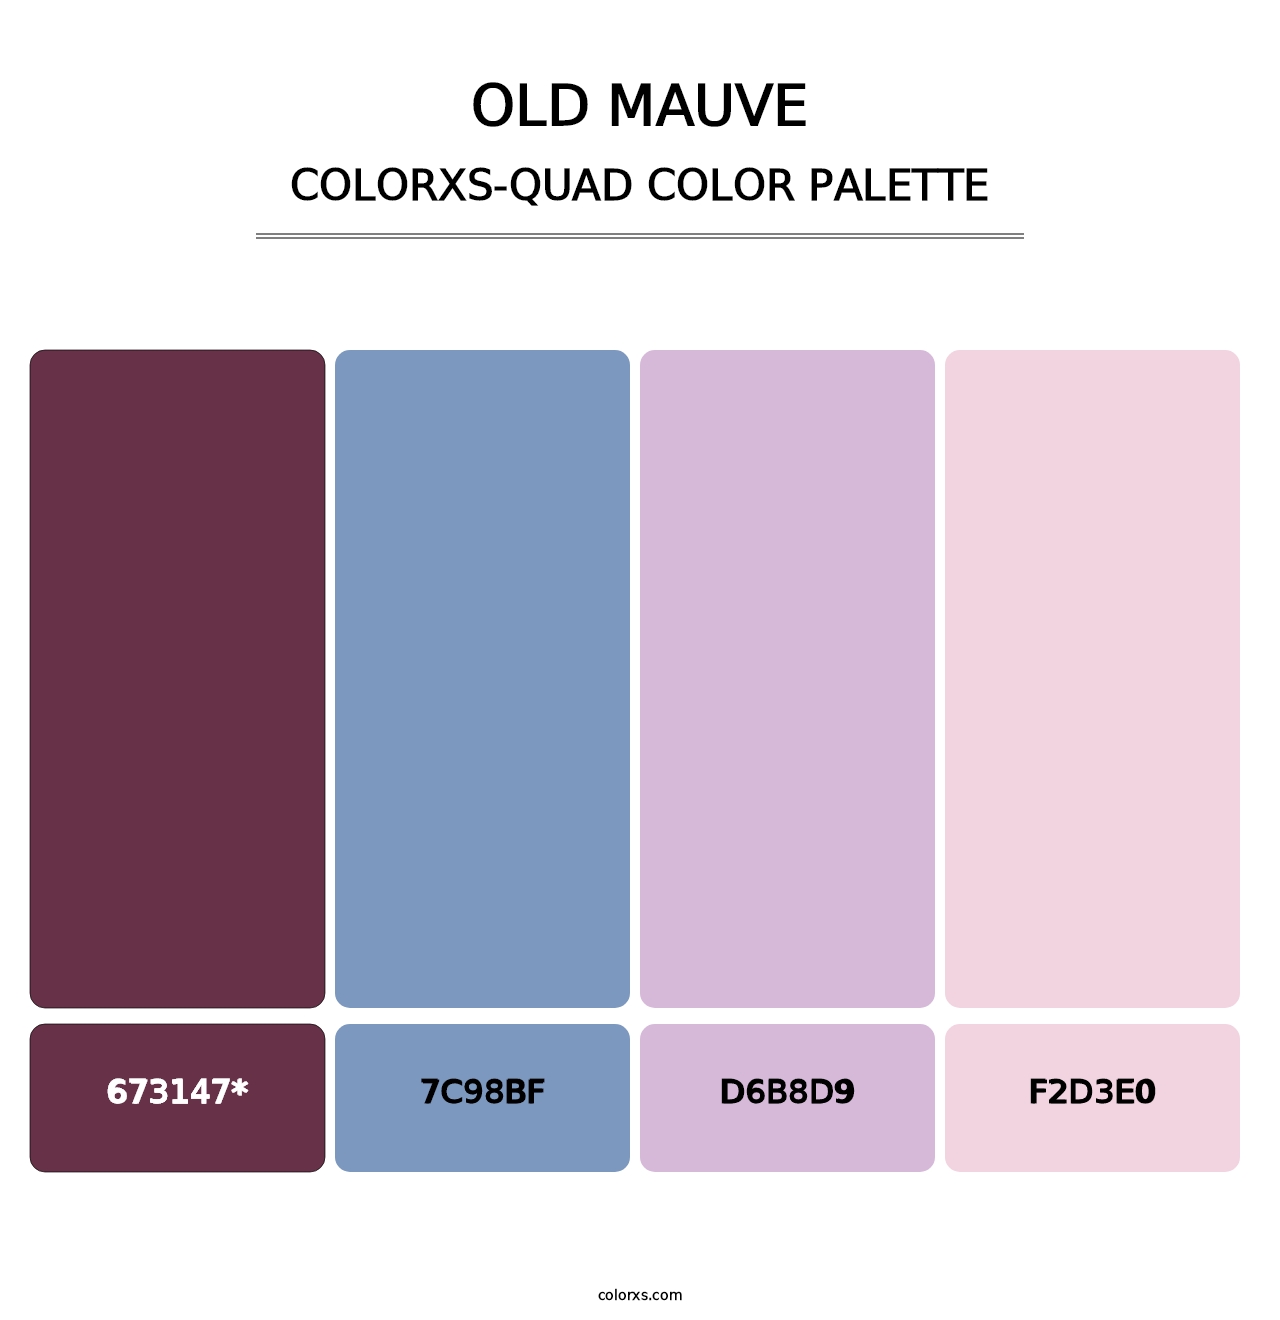 Old Mauve - Colorxs Quad Palette